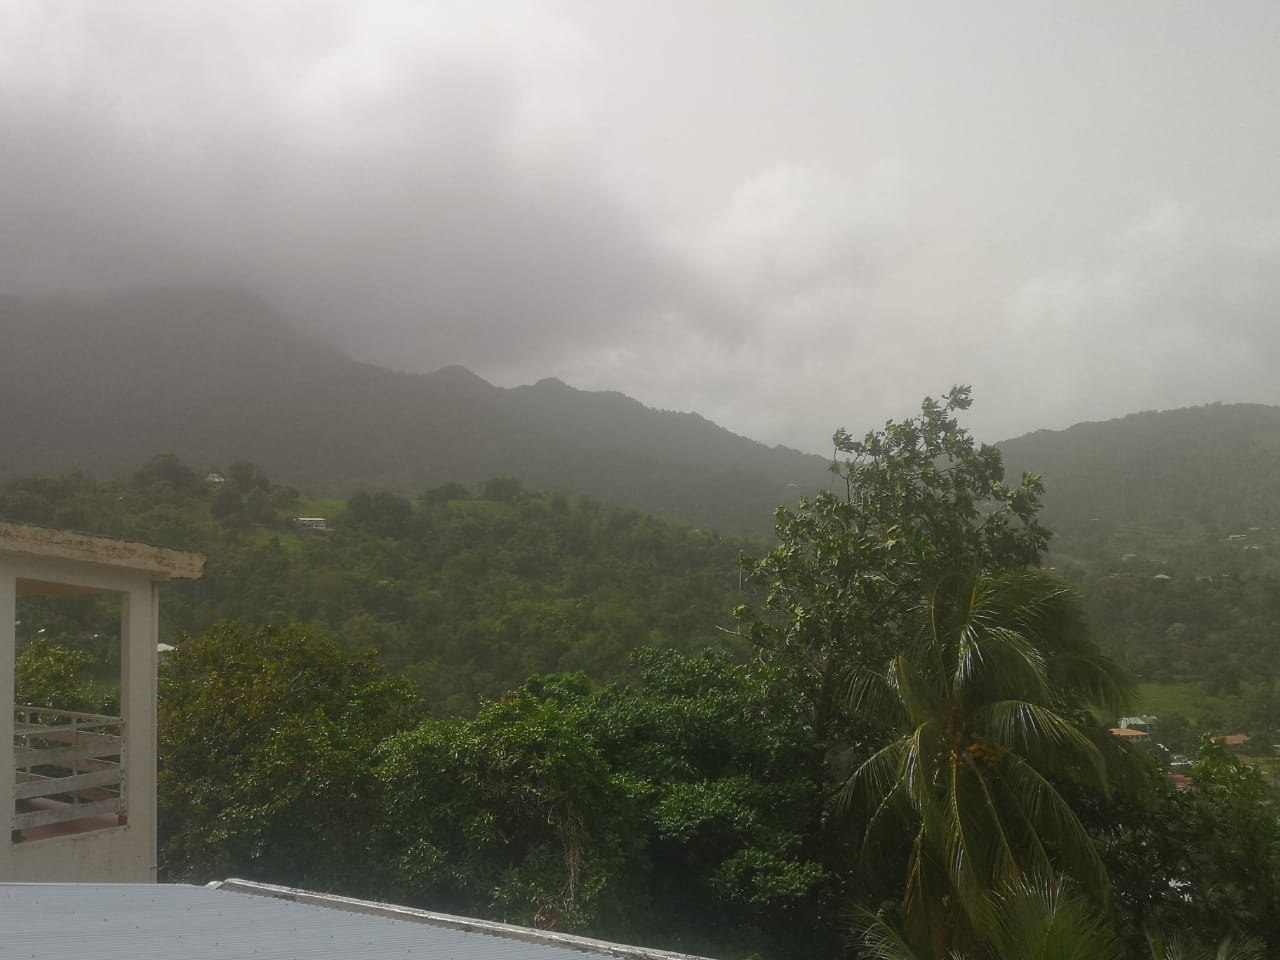     [Photos] Une brume de sable épaisse enveloppe la Martinique

